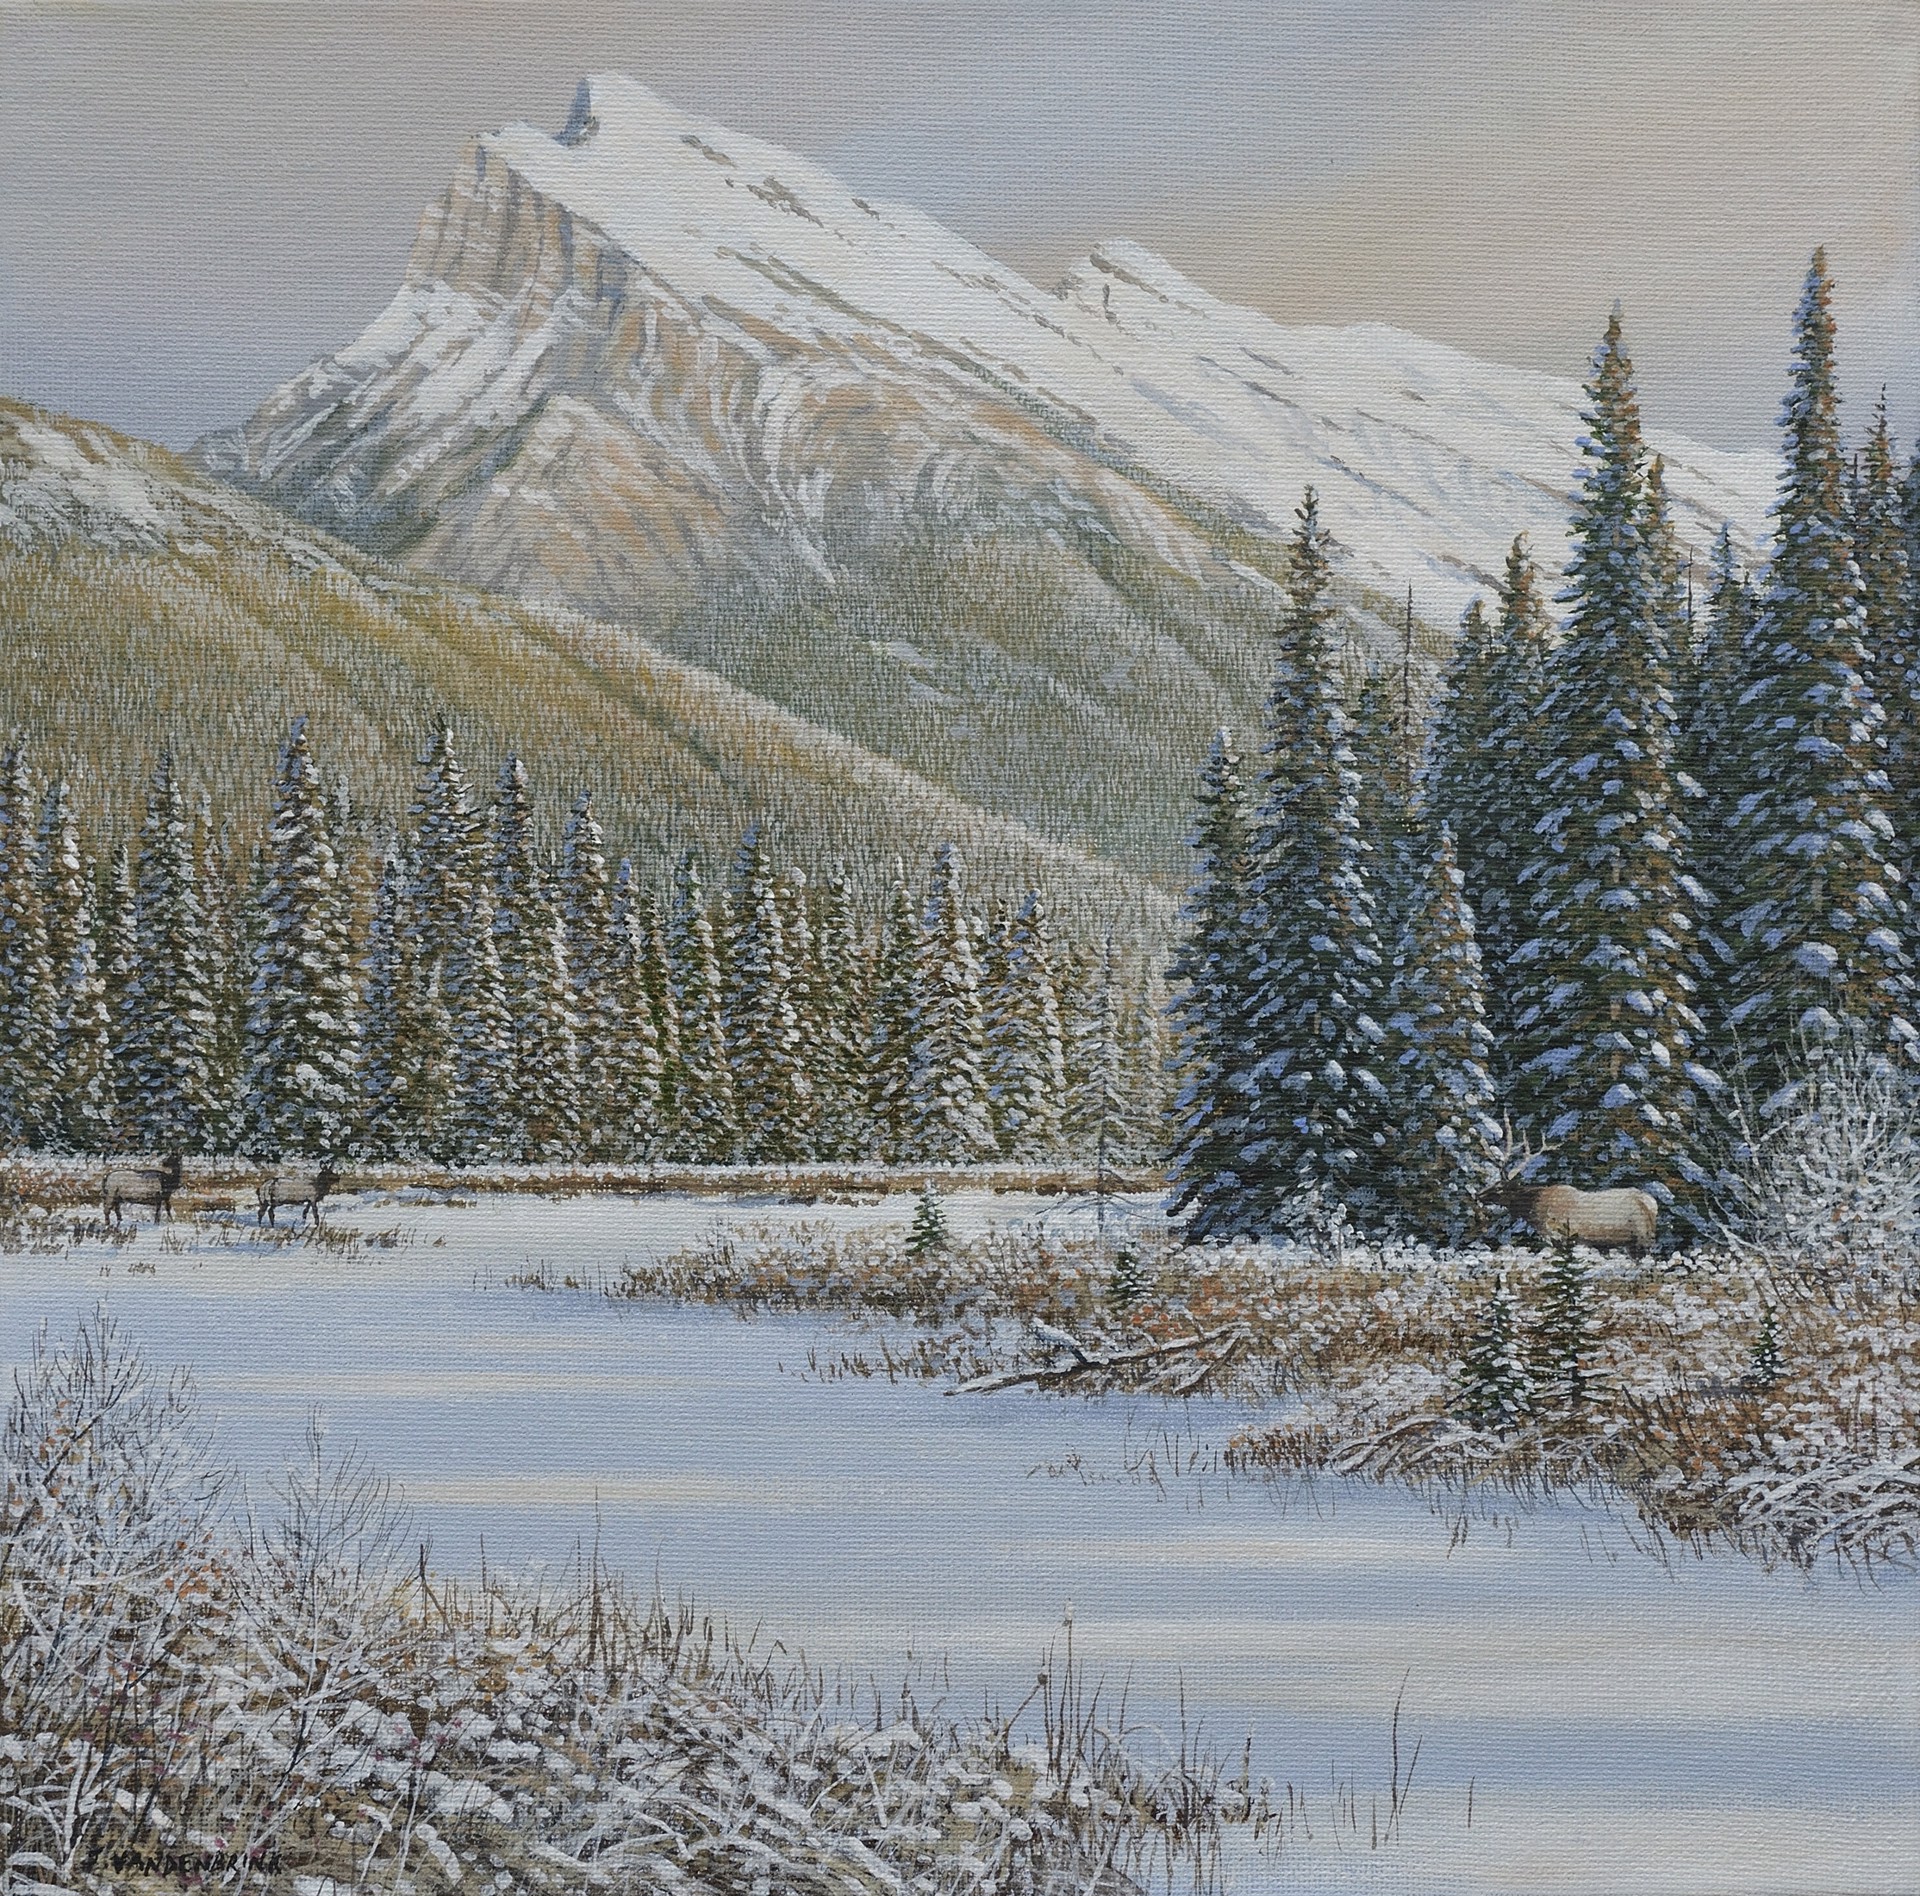 After the Snow (Mount Rundle, Banff) by Jake Vandenbrink